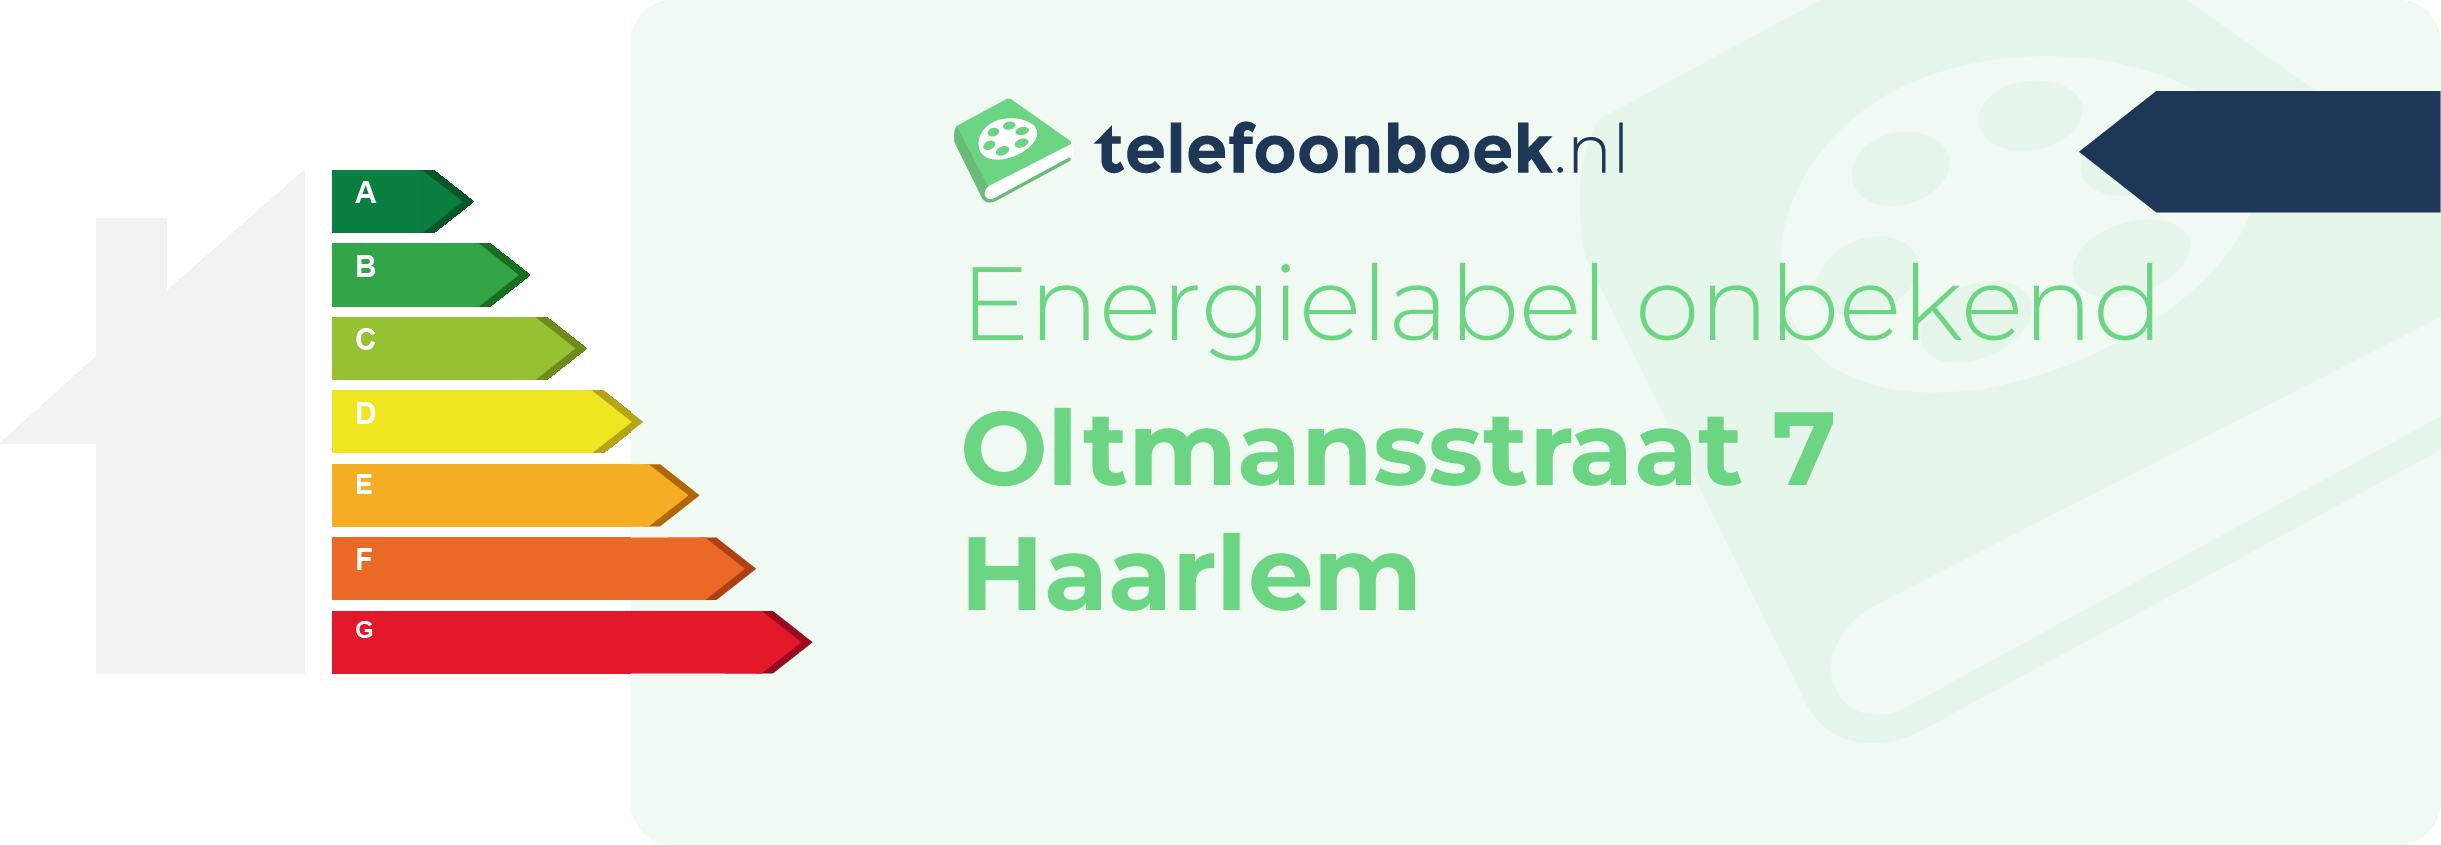 Energielabel Oltmansstraat 7 Haarlem